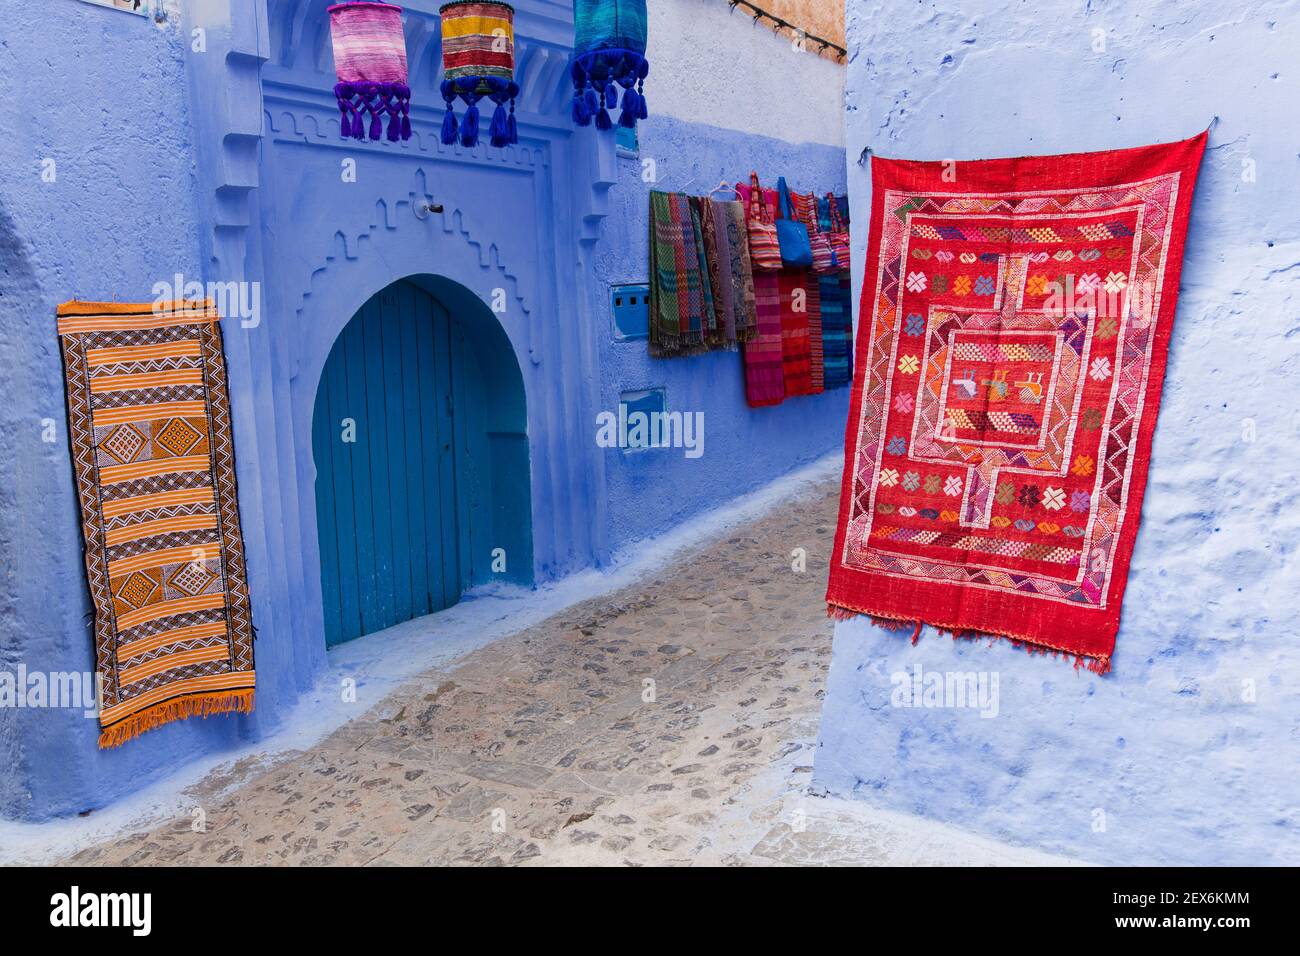 Marruecos,Chefchaouen, arquitectura de edificios blancos y añicos lavados en cal, alfombras y alfombras en exhibición Foto de stock